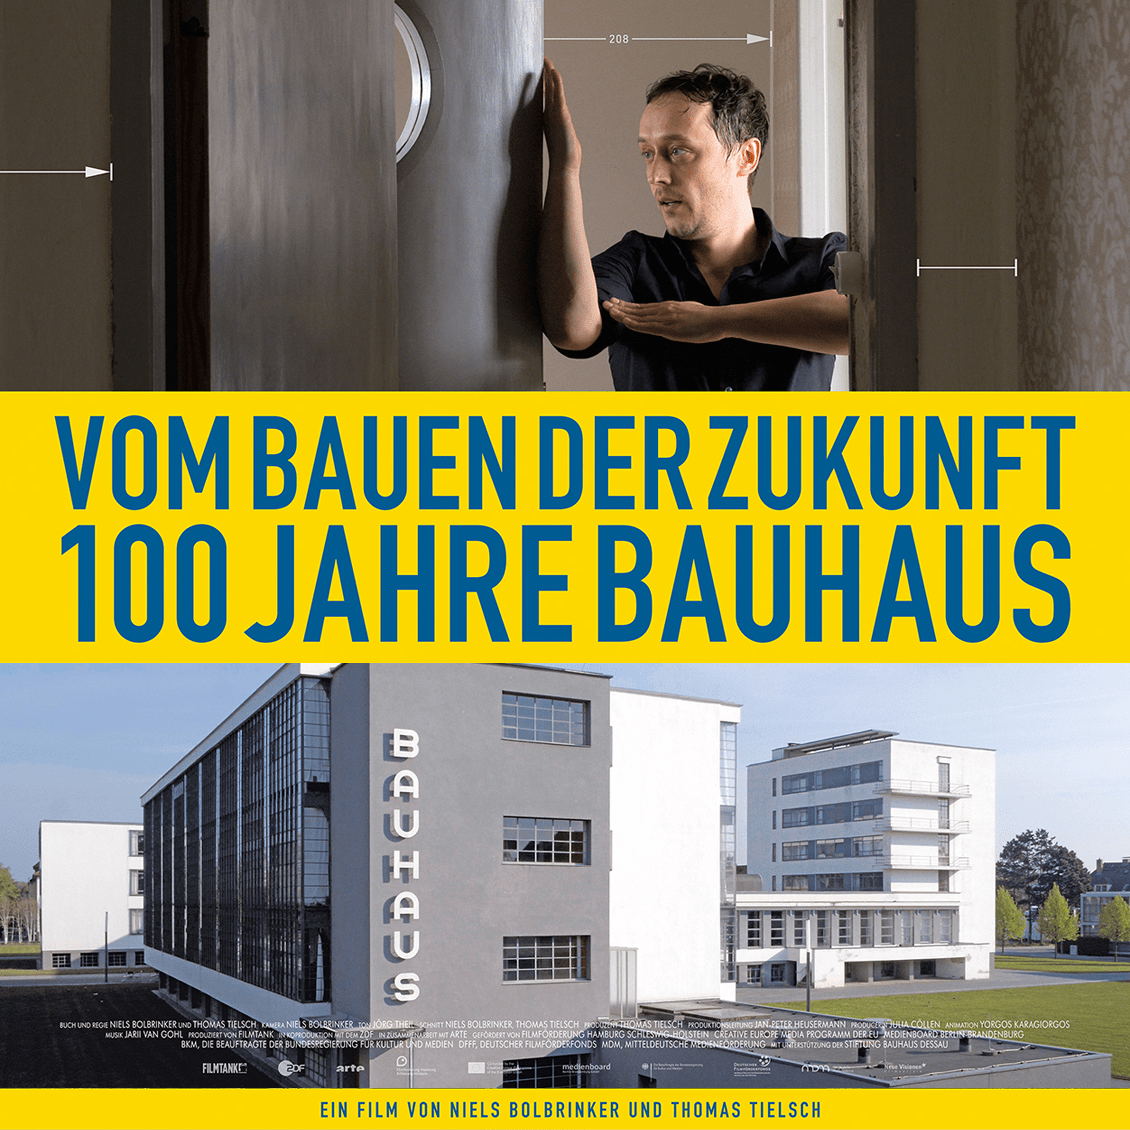 Vom Bauen der Zukunft - 100 Jahre Bauhausの画像